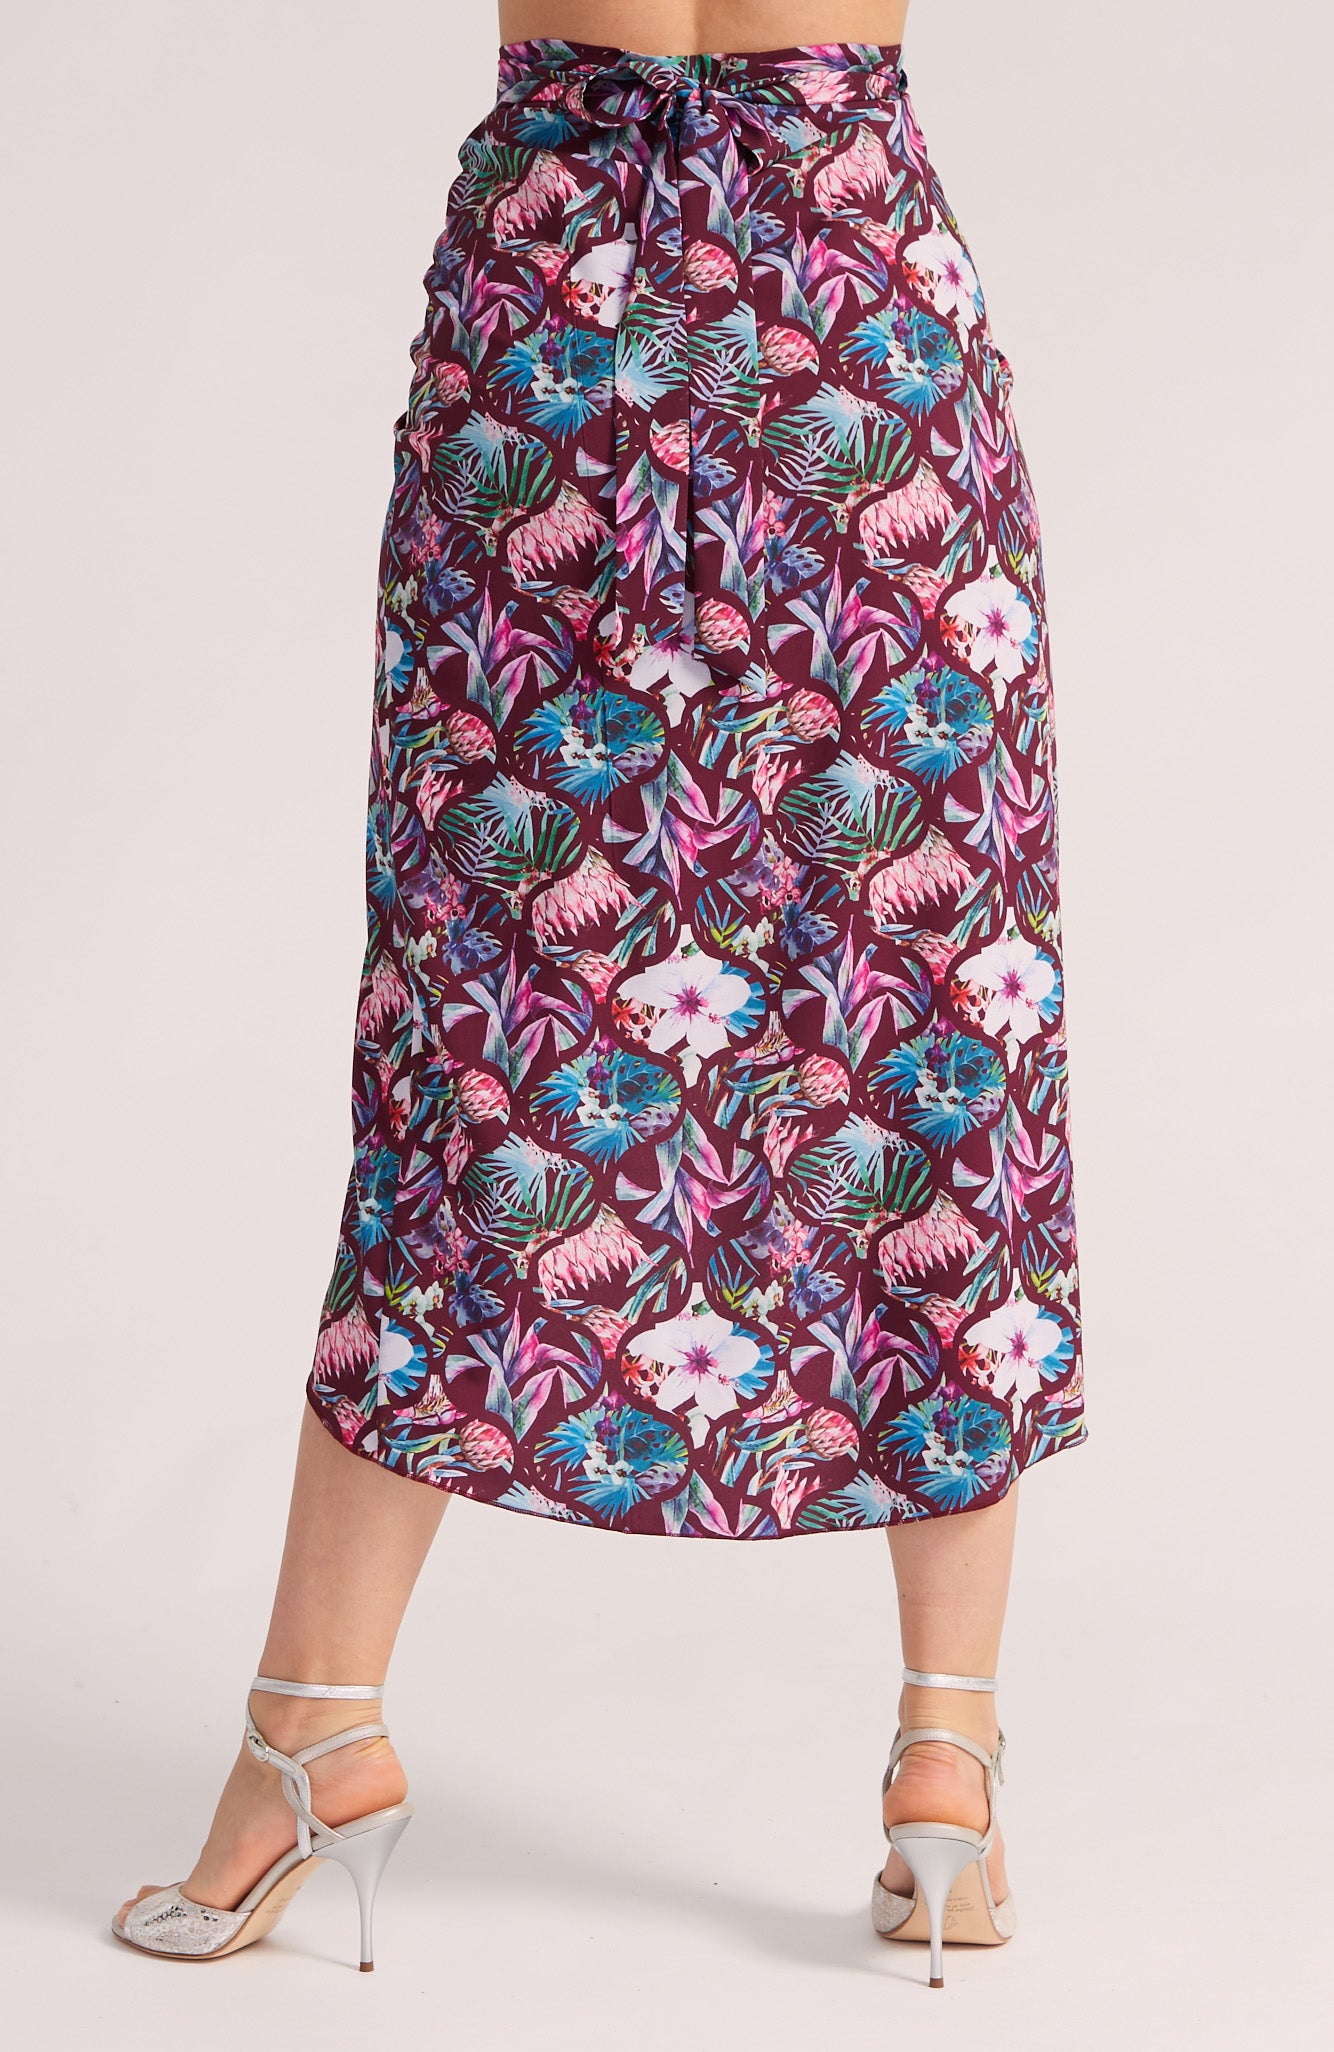 JULIET - Wrap Skirt in Summer Florals